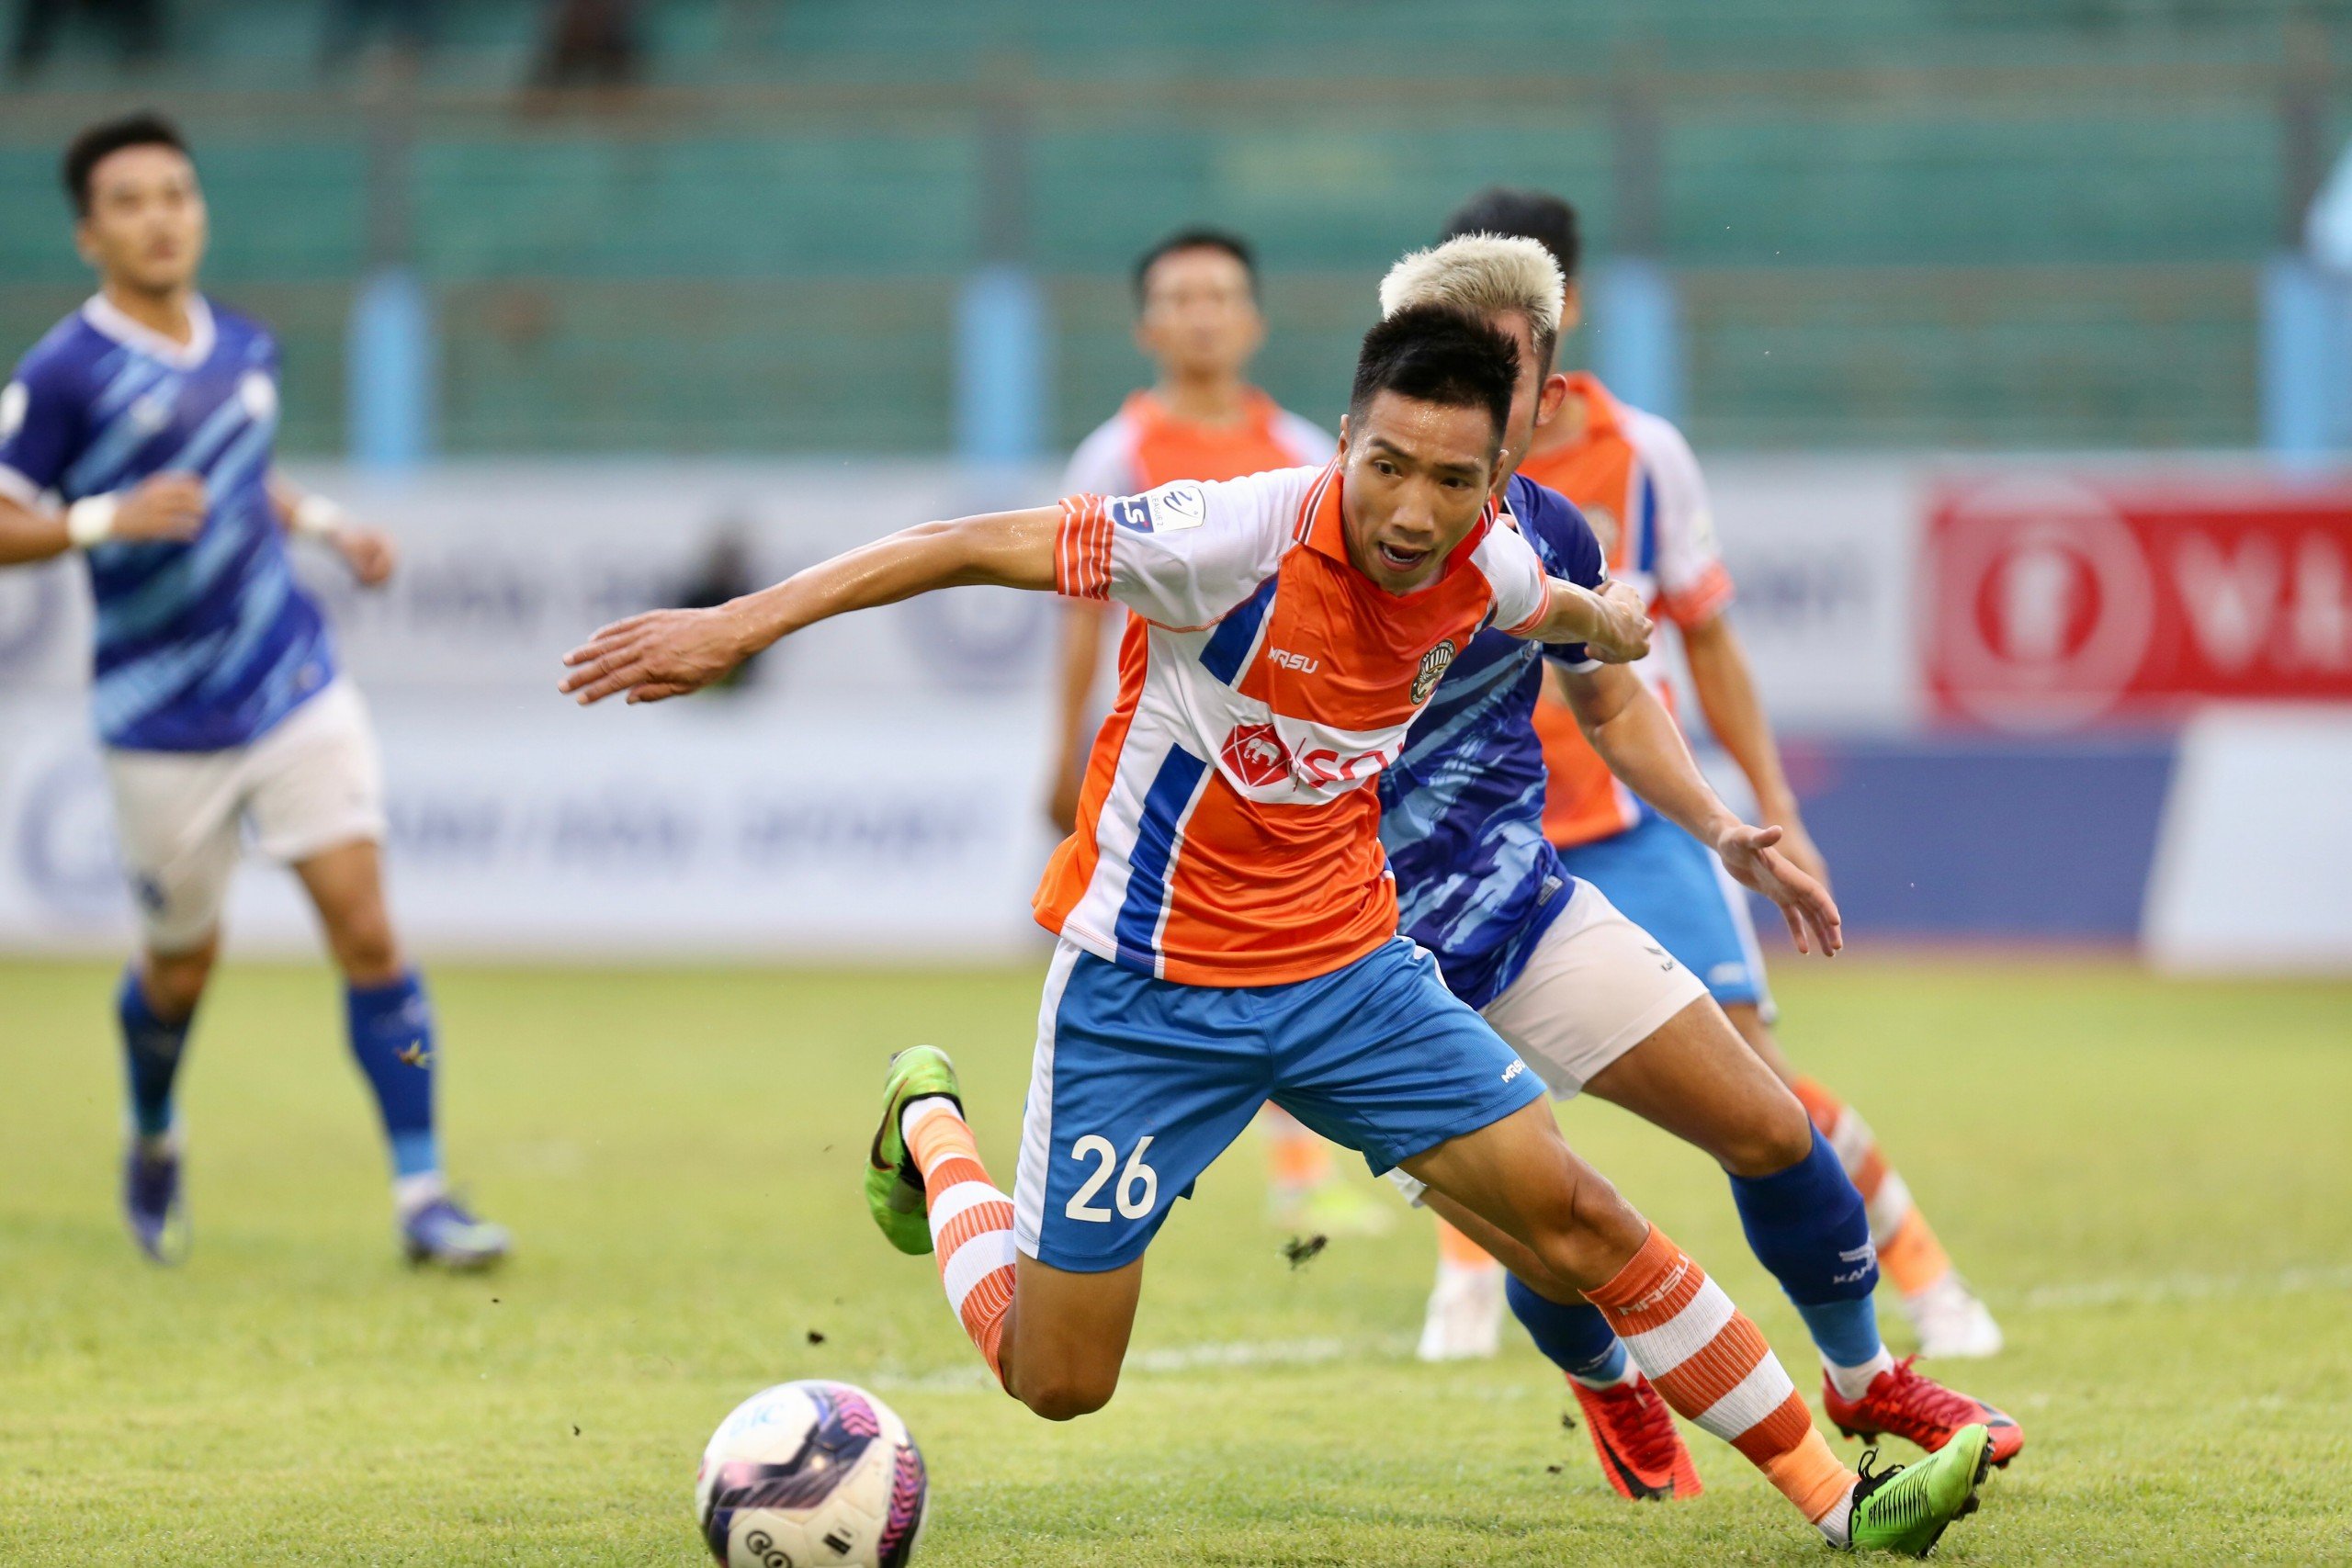 Tin bóng đá sáng 10/6: Huỳnh Như góp công lớn giúp Lank FC trụ hạng; ĐT Indonesia thua đậm